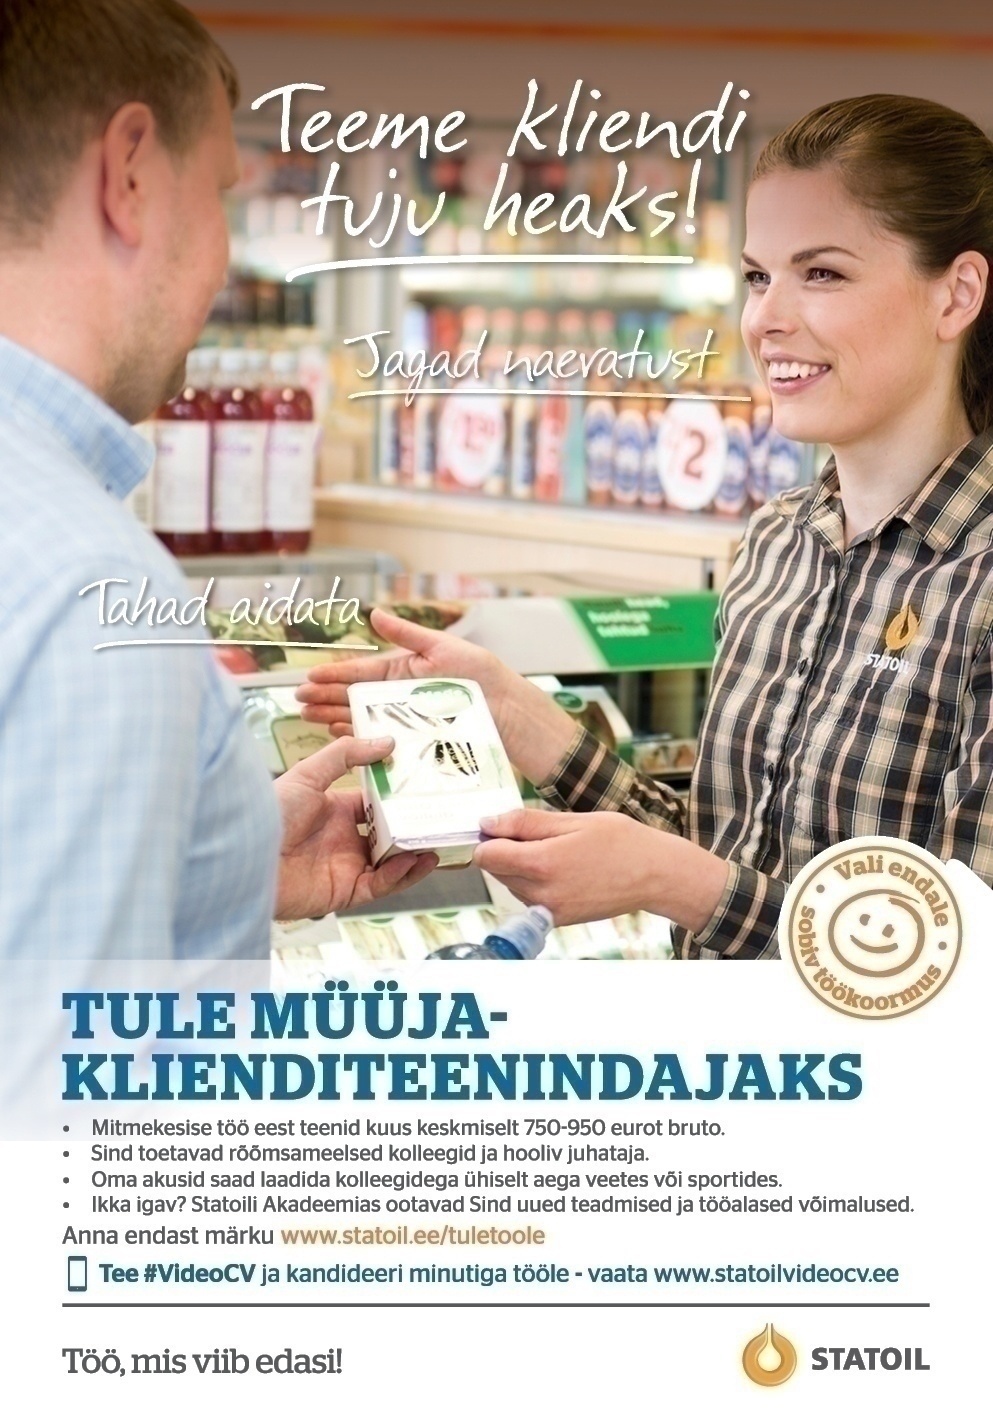 Circle K Eesti AS Müüja-klienditeenindaja Tallinna Tammsaare teenindusjaama